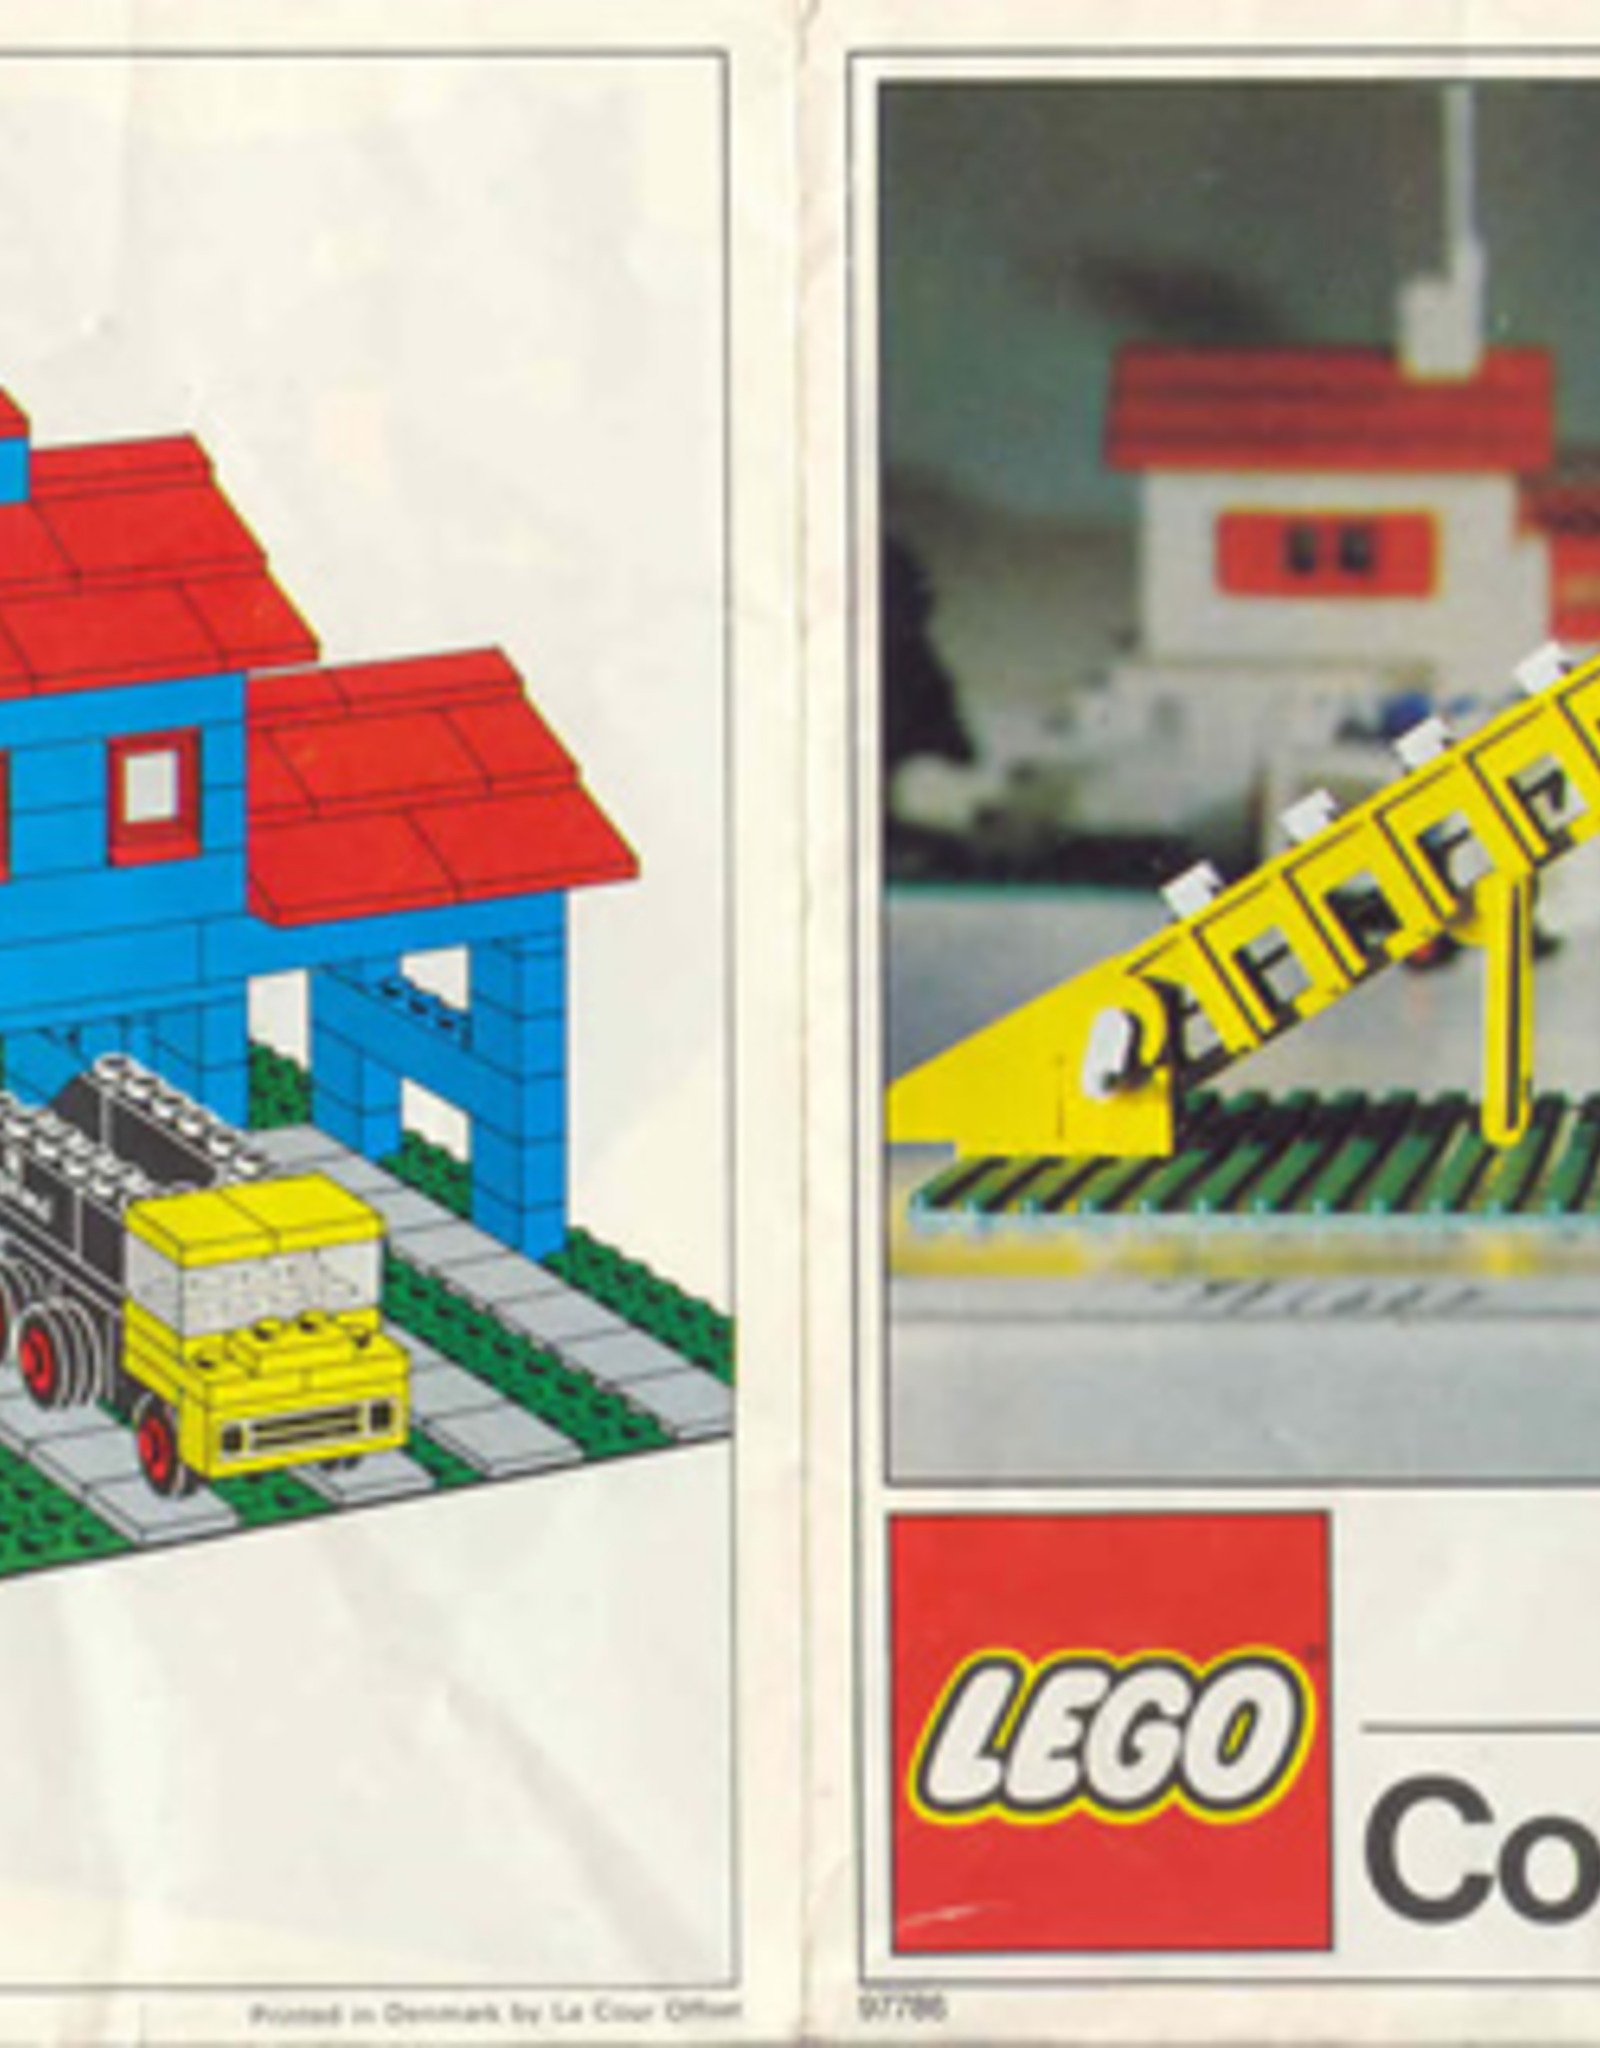 LEGO LEGO 545 Conveyor Station  LEGOLAND